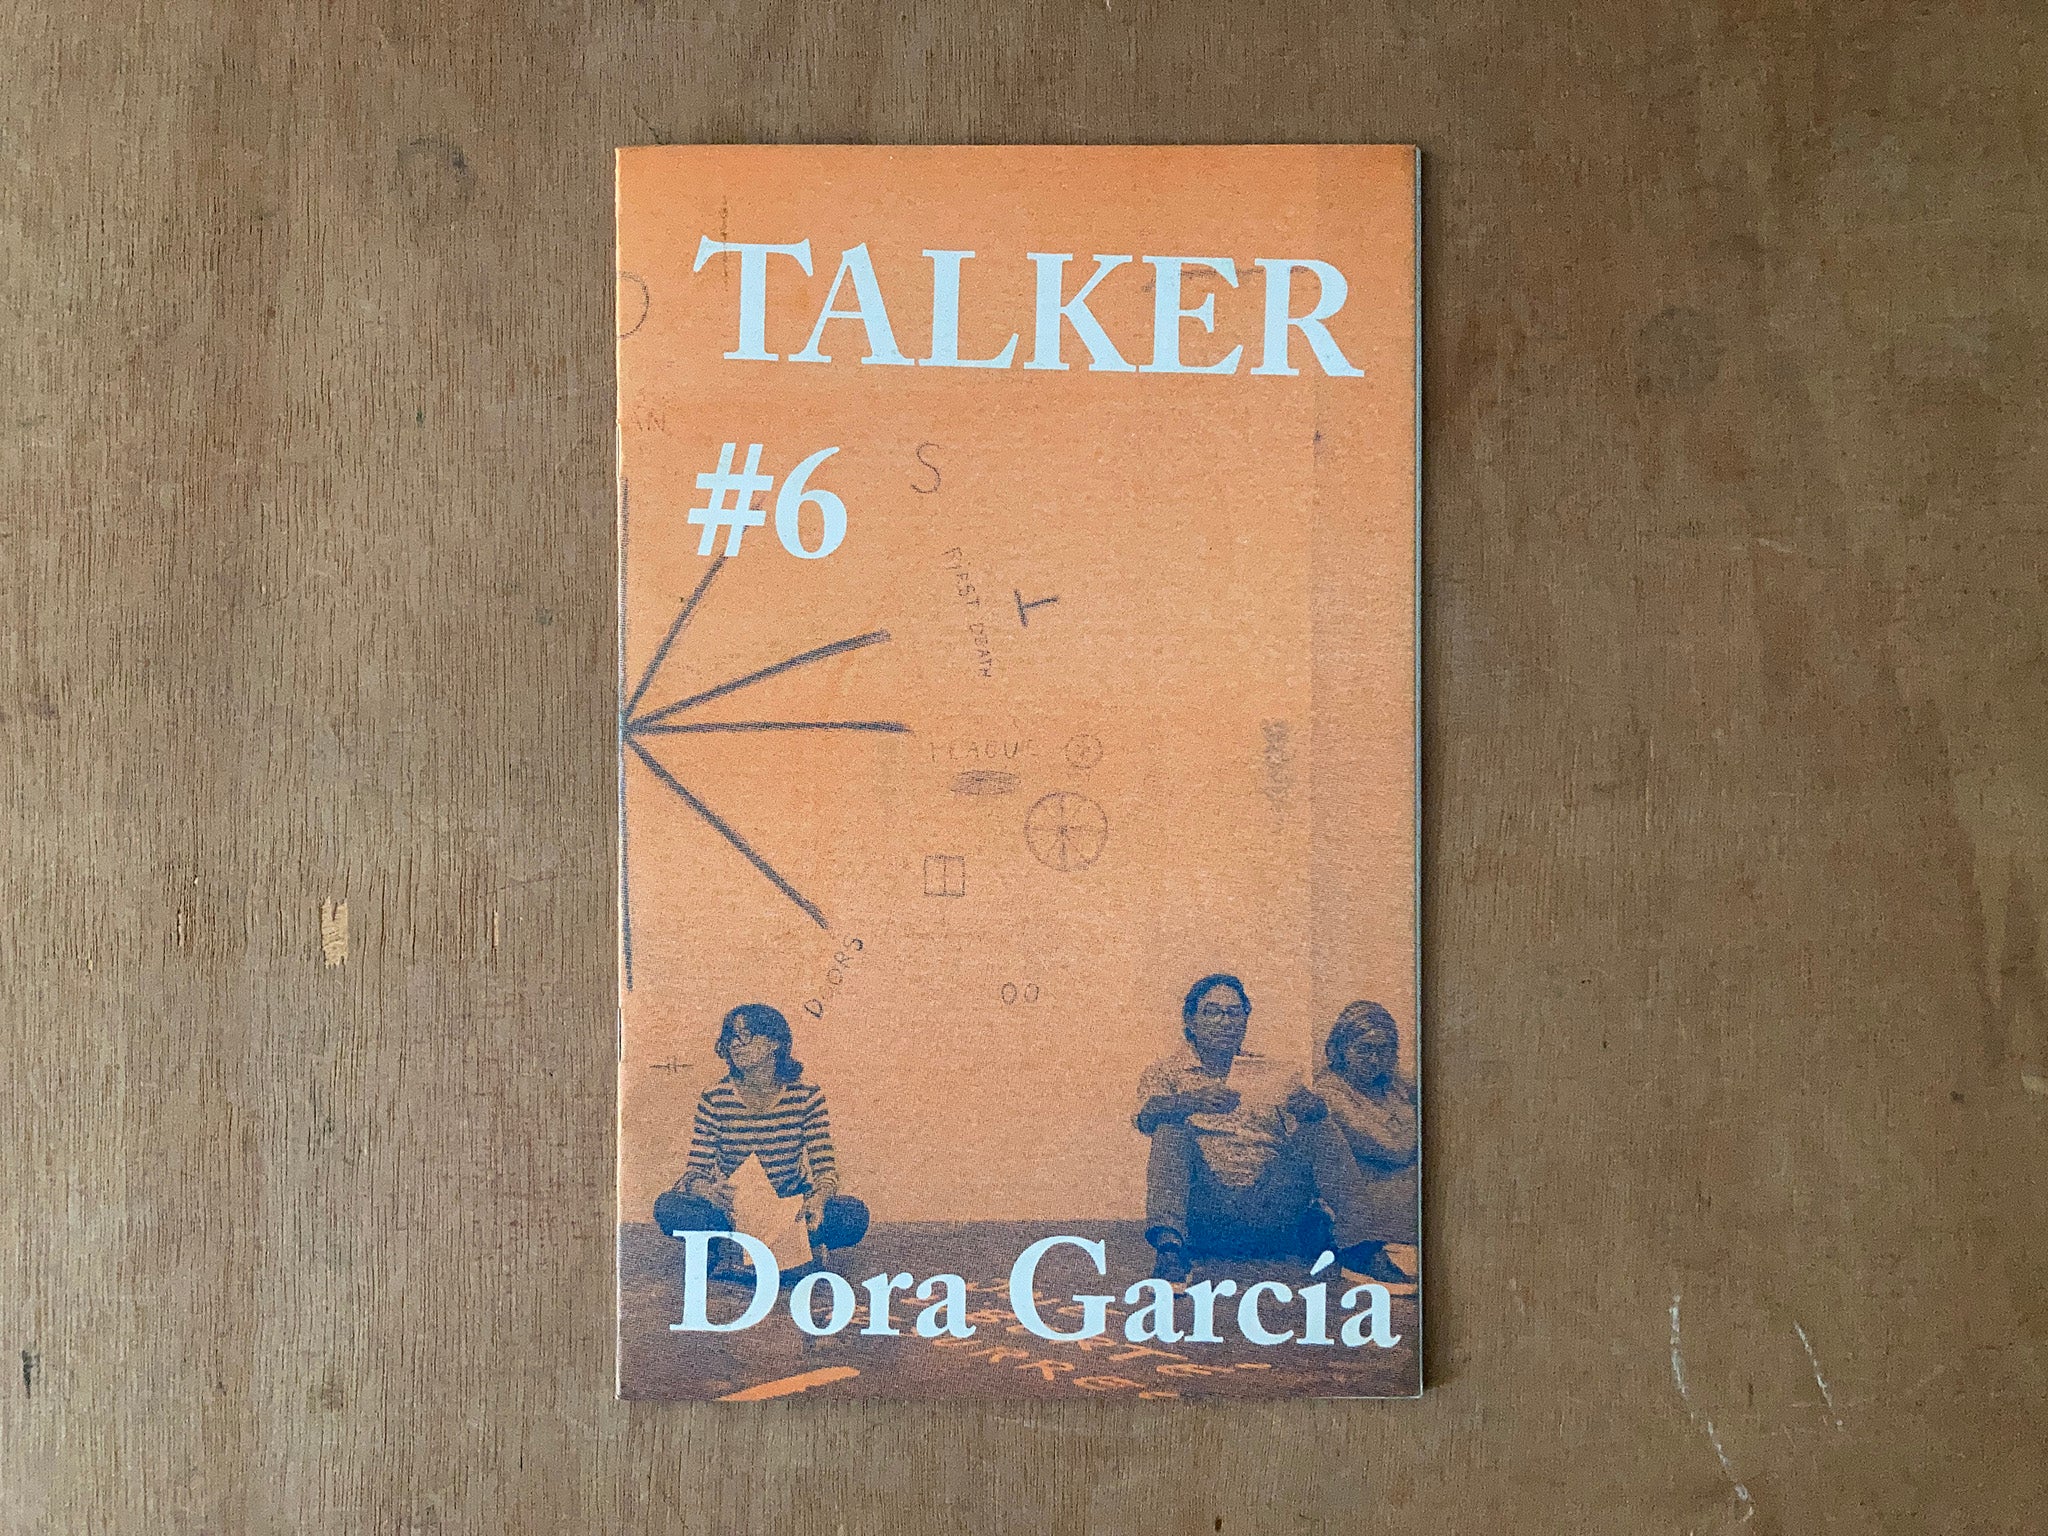 TALKER #6: DORA GARCIA